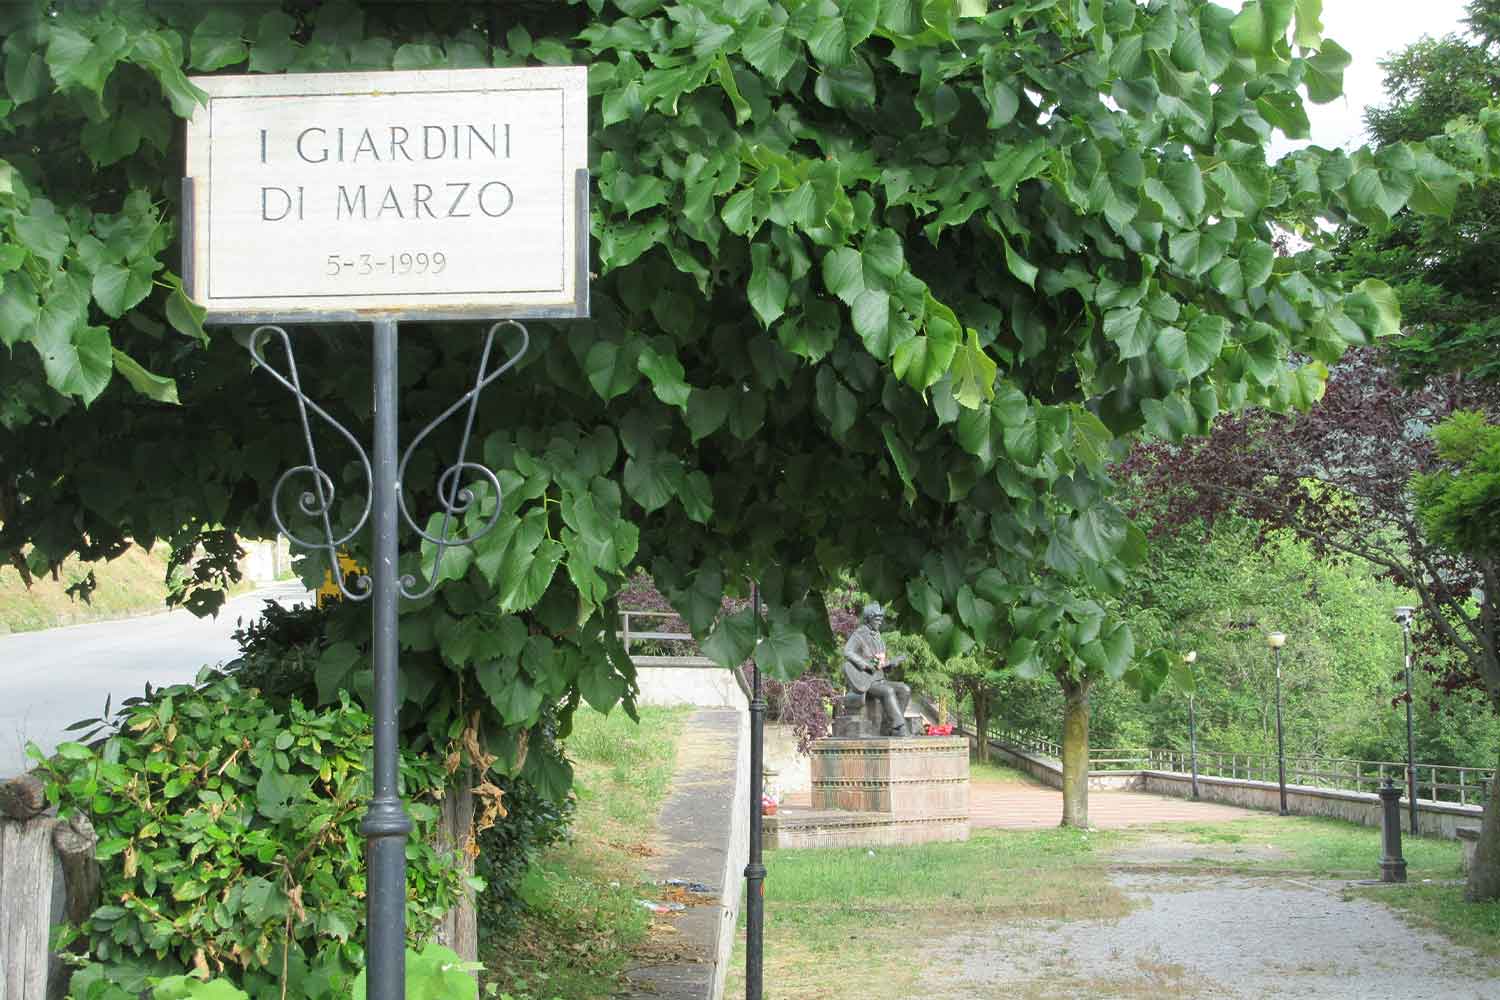 I Giardini di marzo a Poggio Bustone (Rieti)